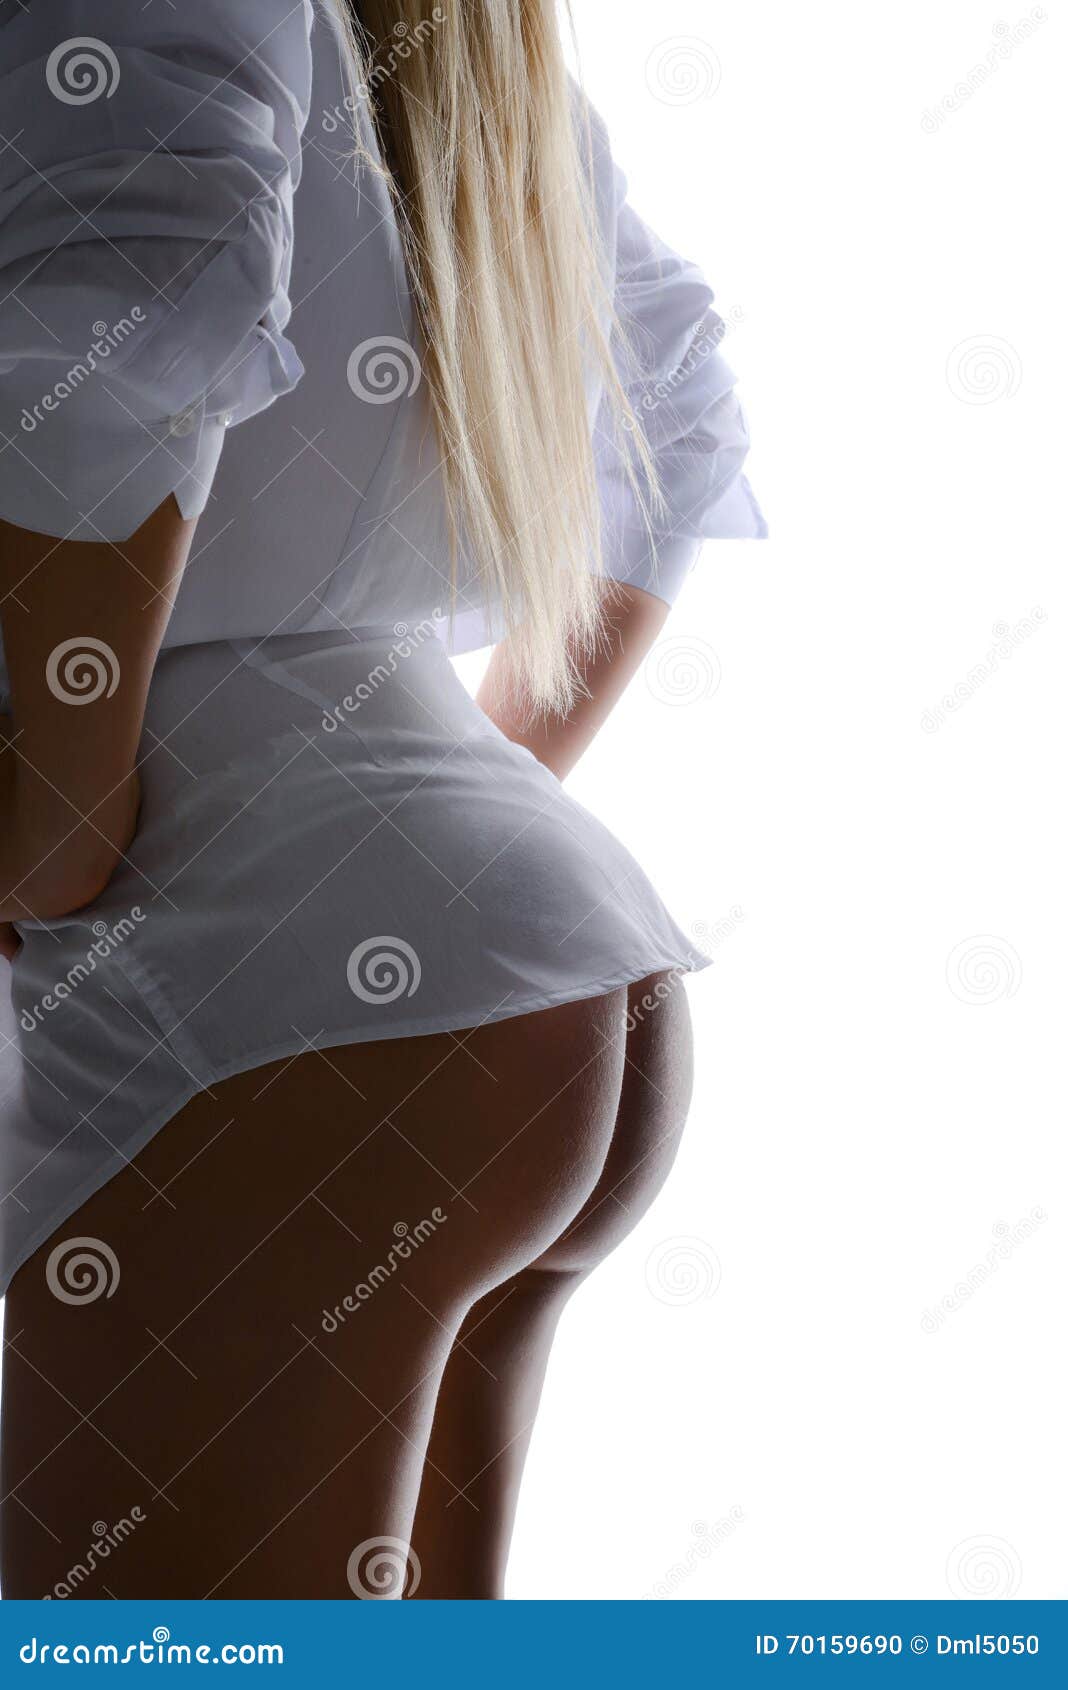 nice blonde chick ass sex pics